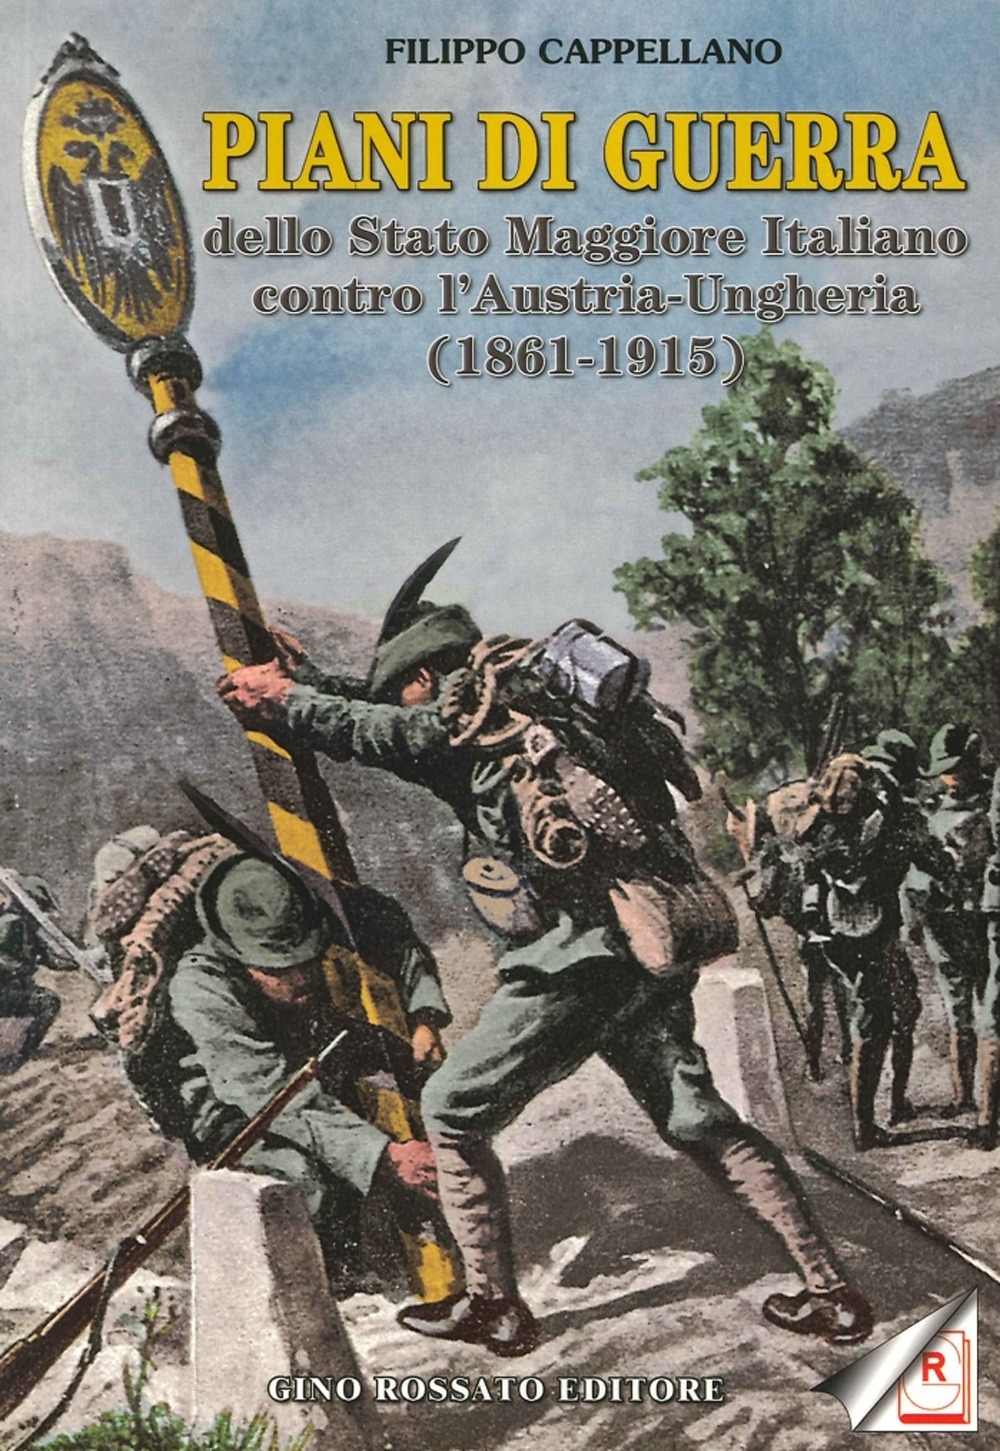 Piani di guerra dello Stato Maggiore Italiano contro l'Austria-Ungheria (1861-1915)